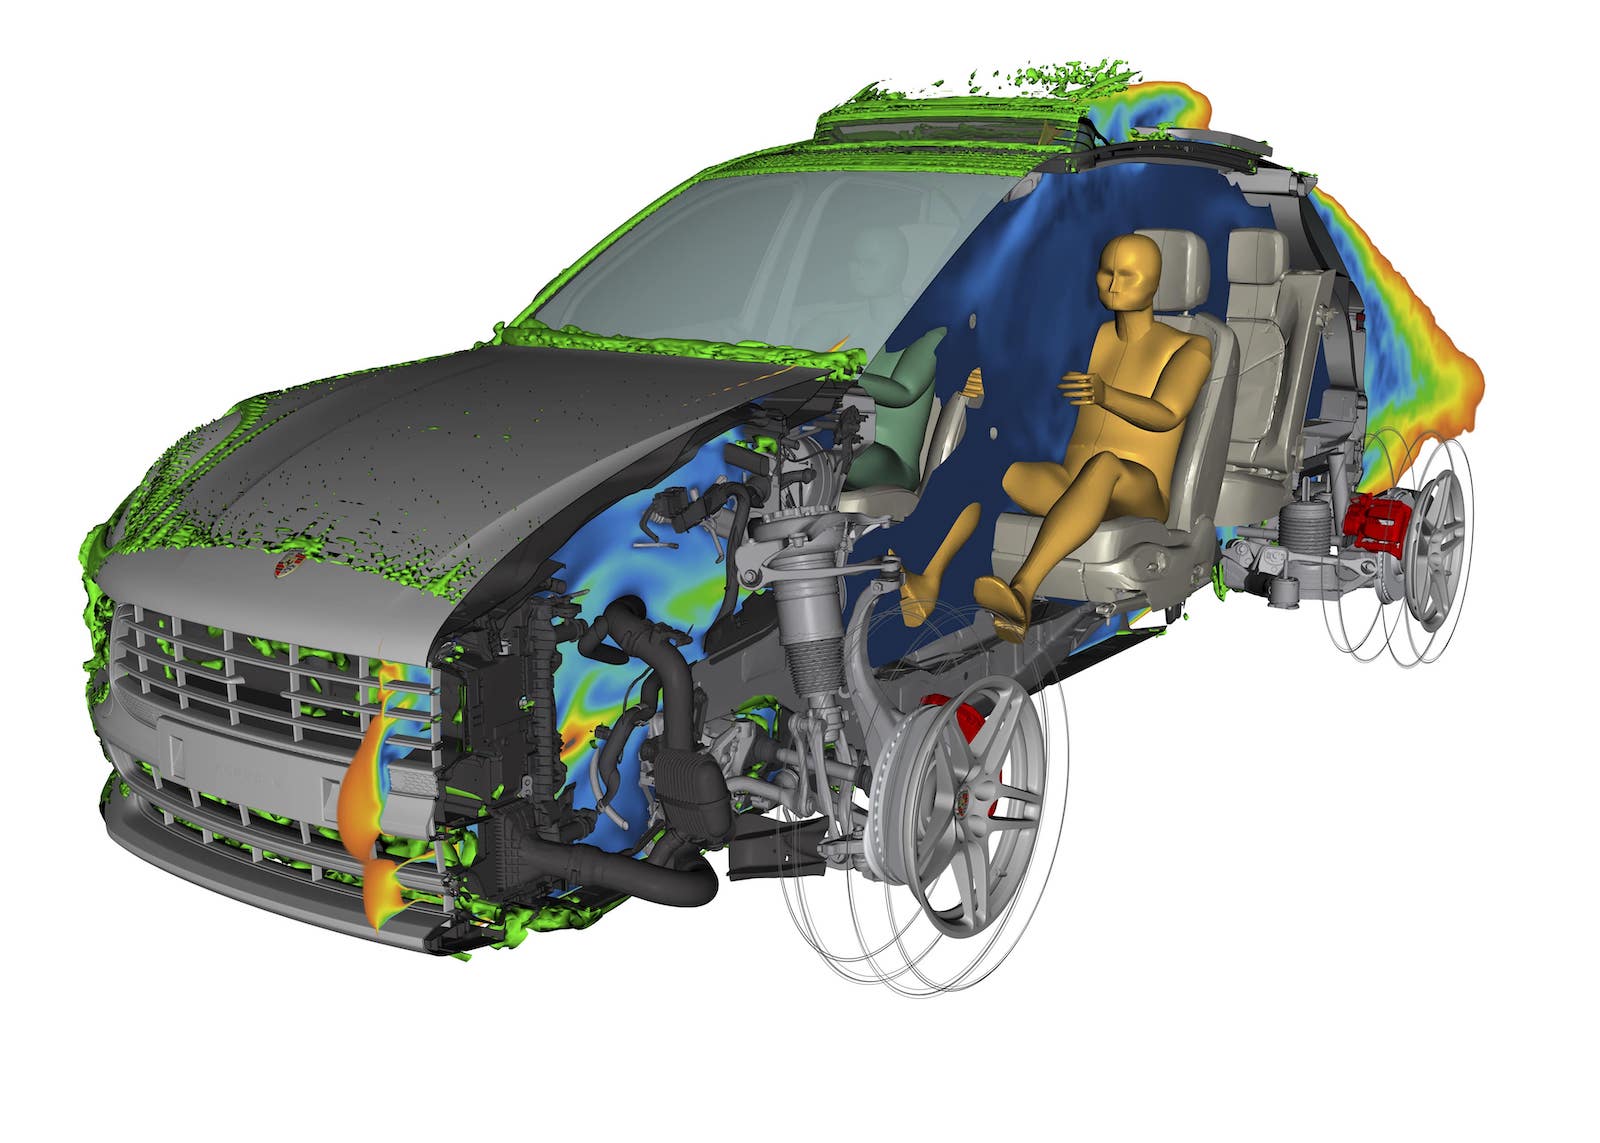 虛擬數位開發和測試節省了時間和成本，共有 20 款數位化原型車，用於開發中不同功能的模擬測試。